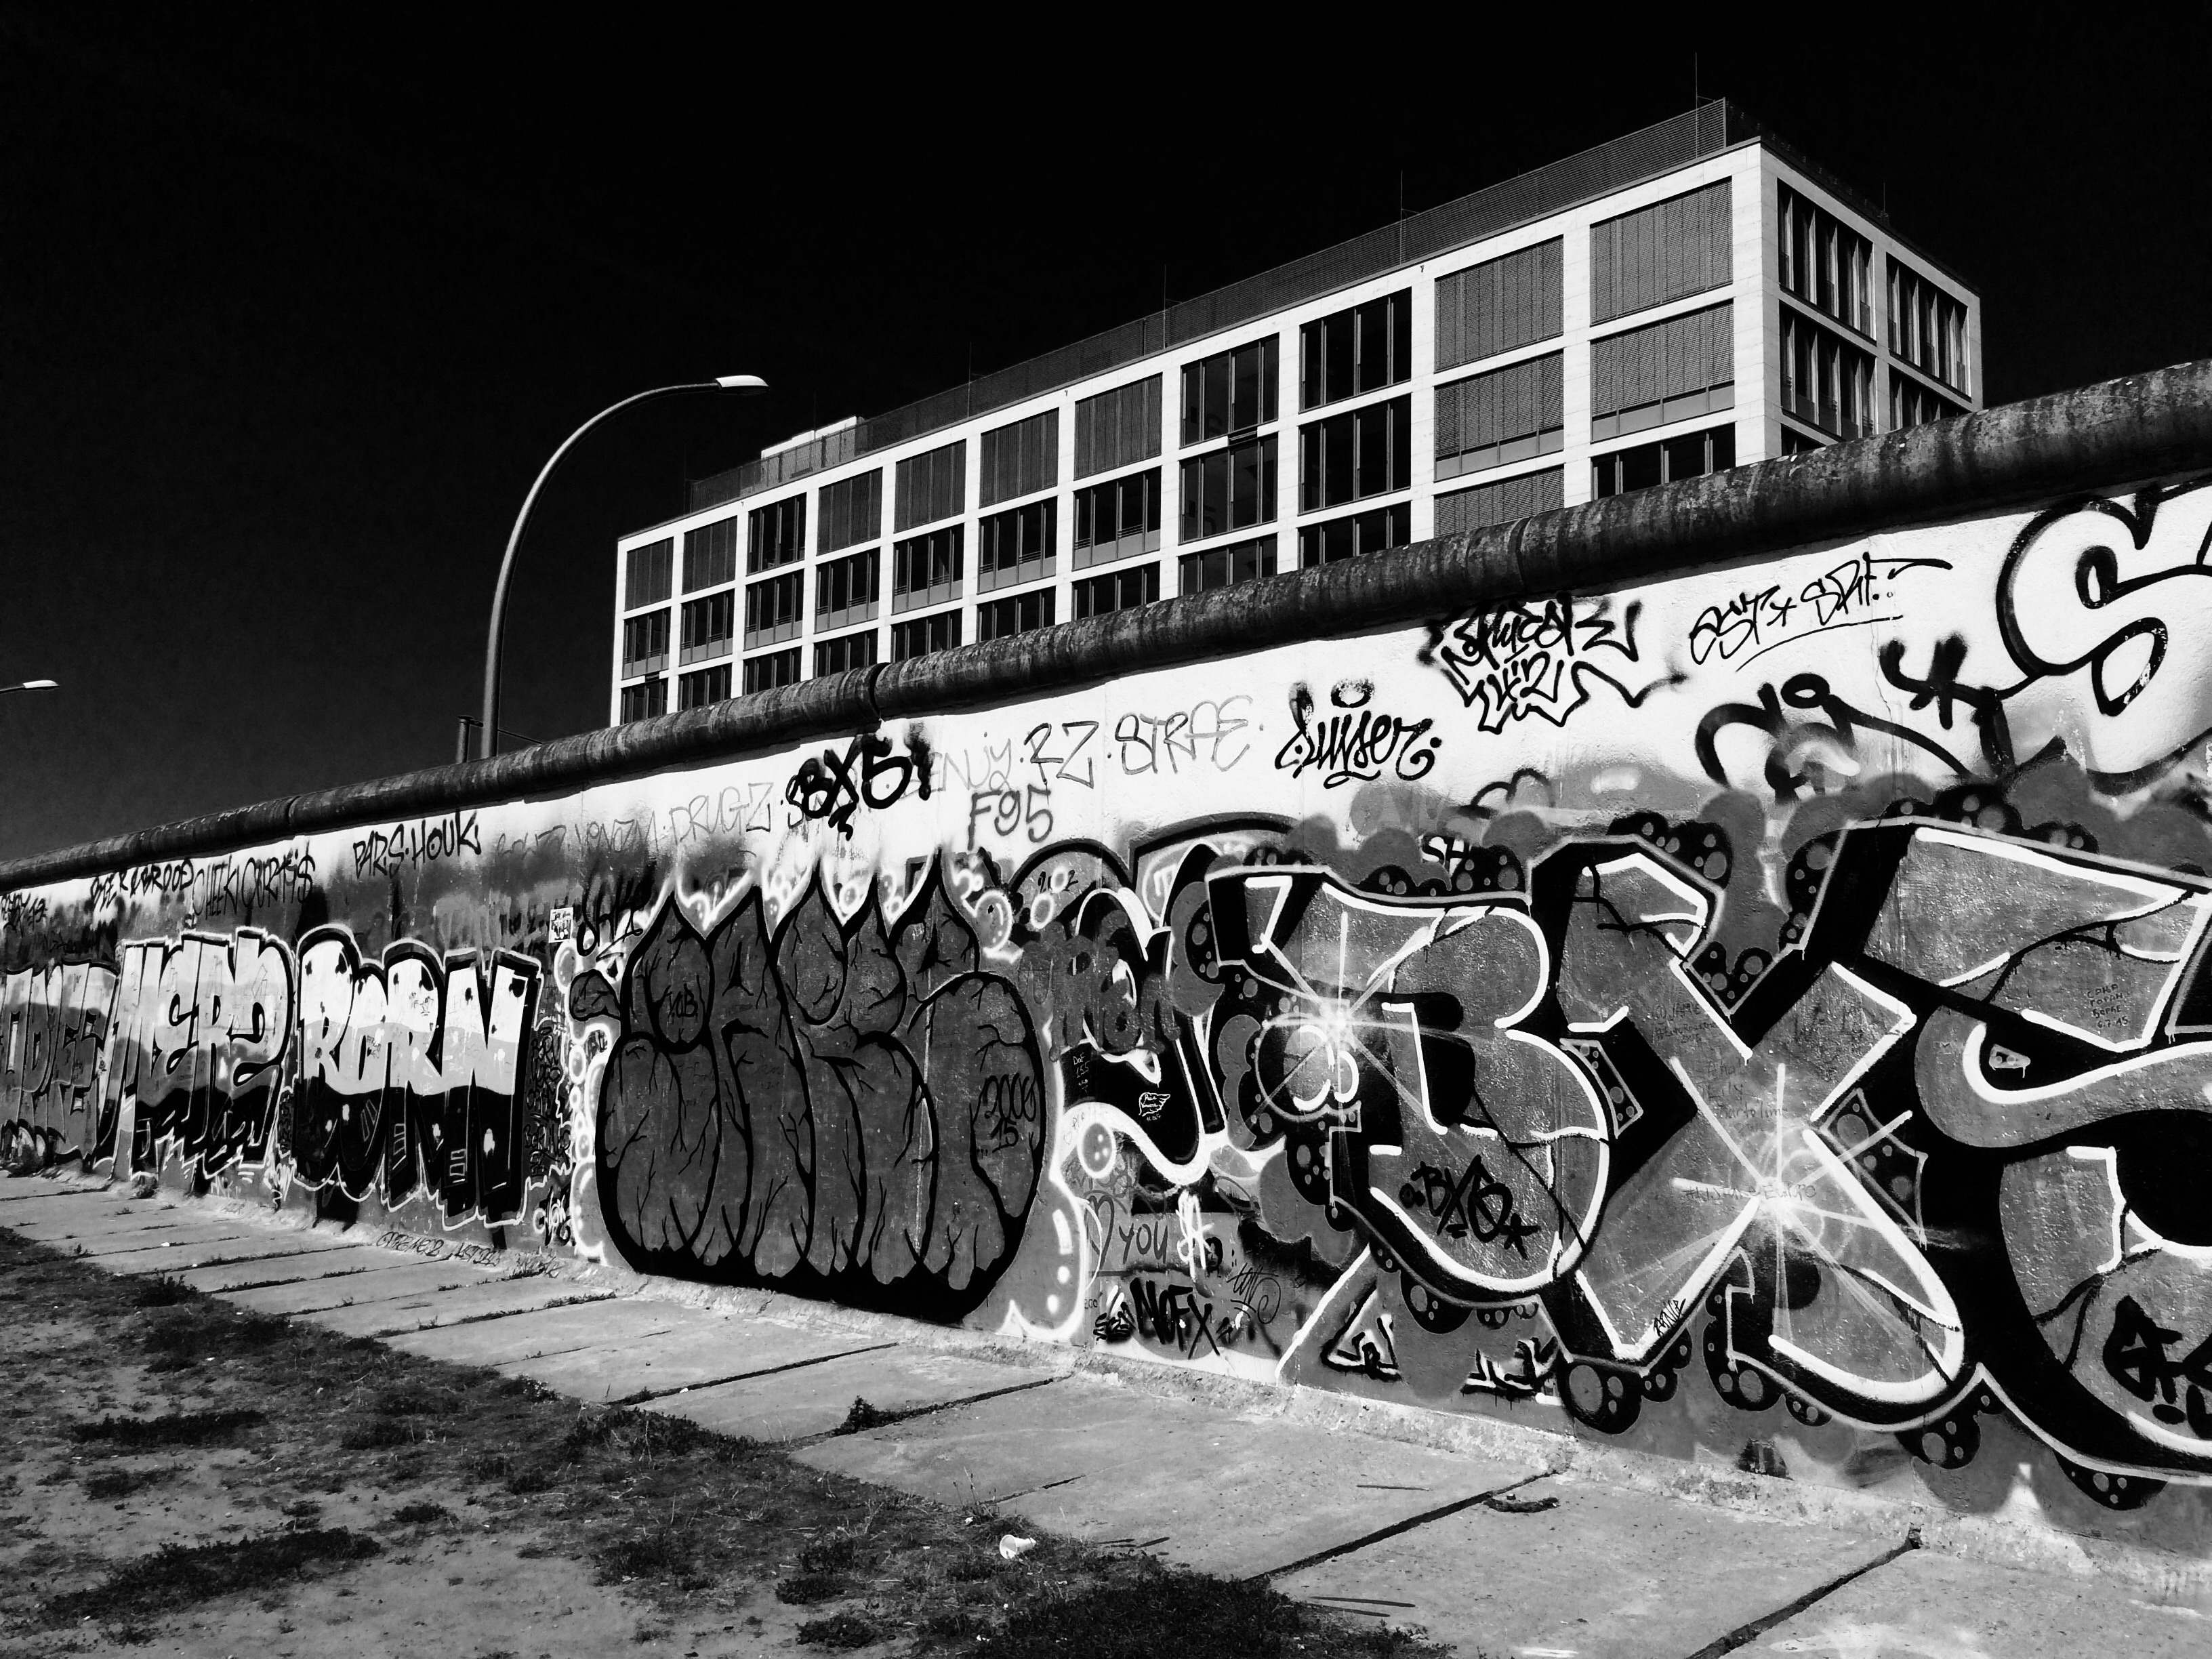 gray and white wall graffiti